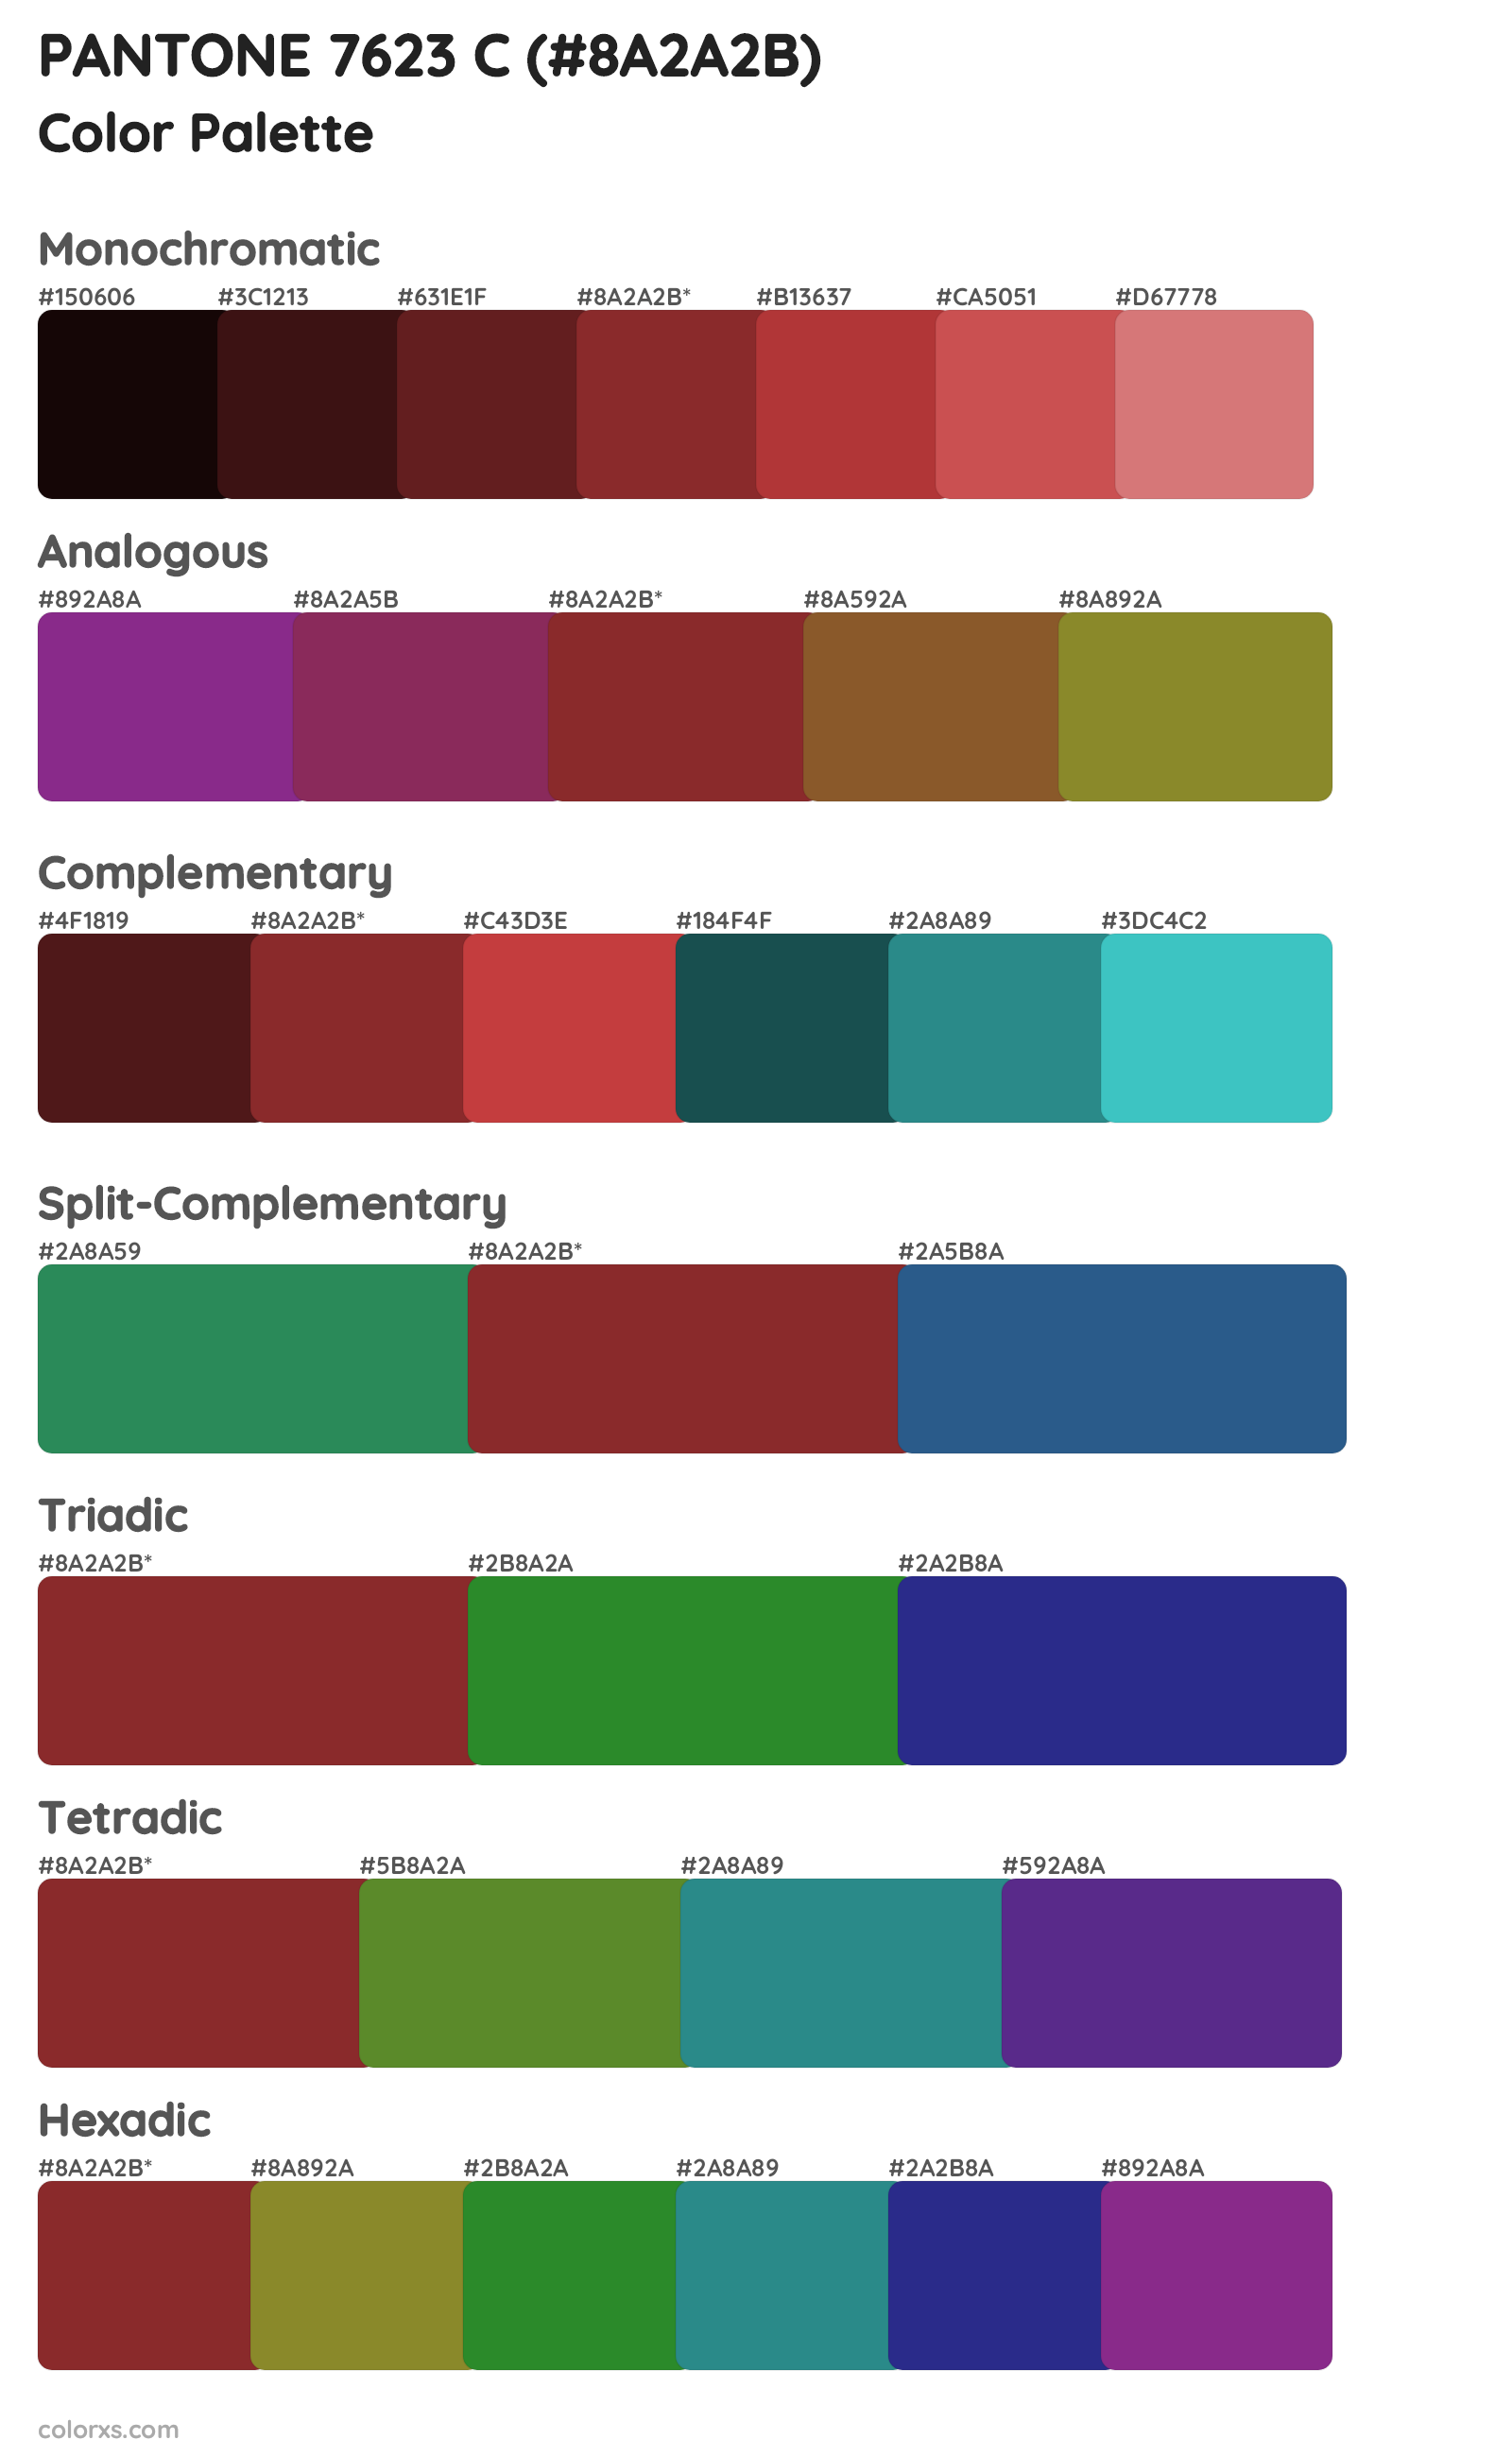 PANTONE 7623 C Color Scheme Palettes